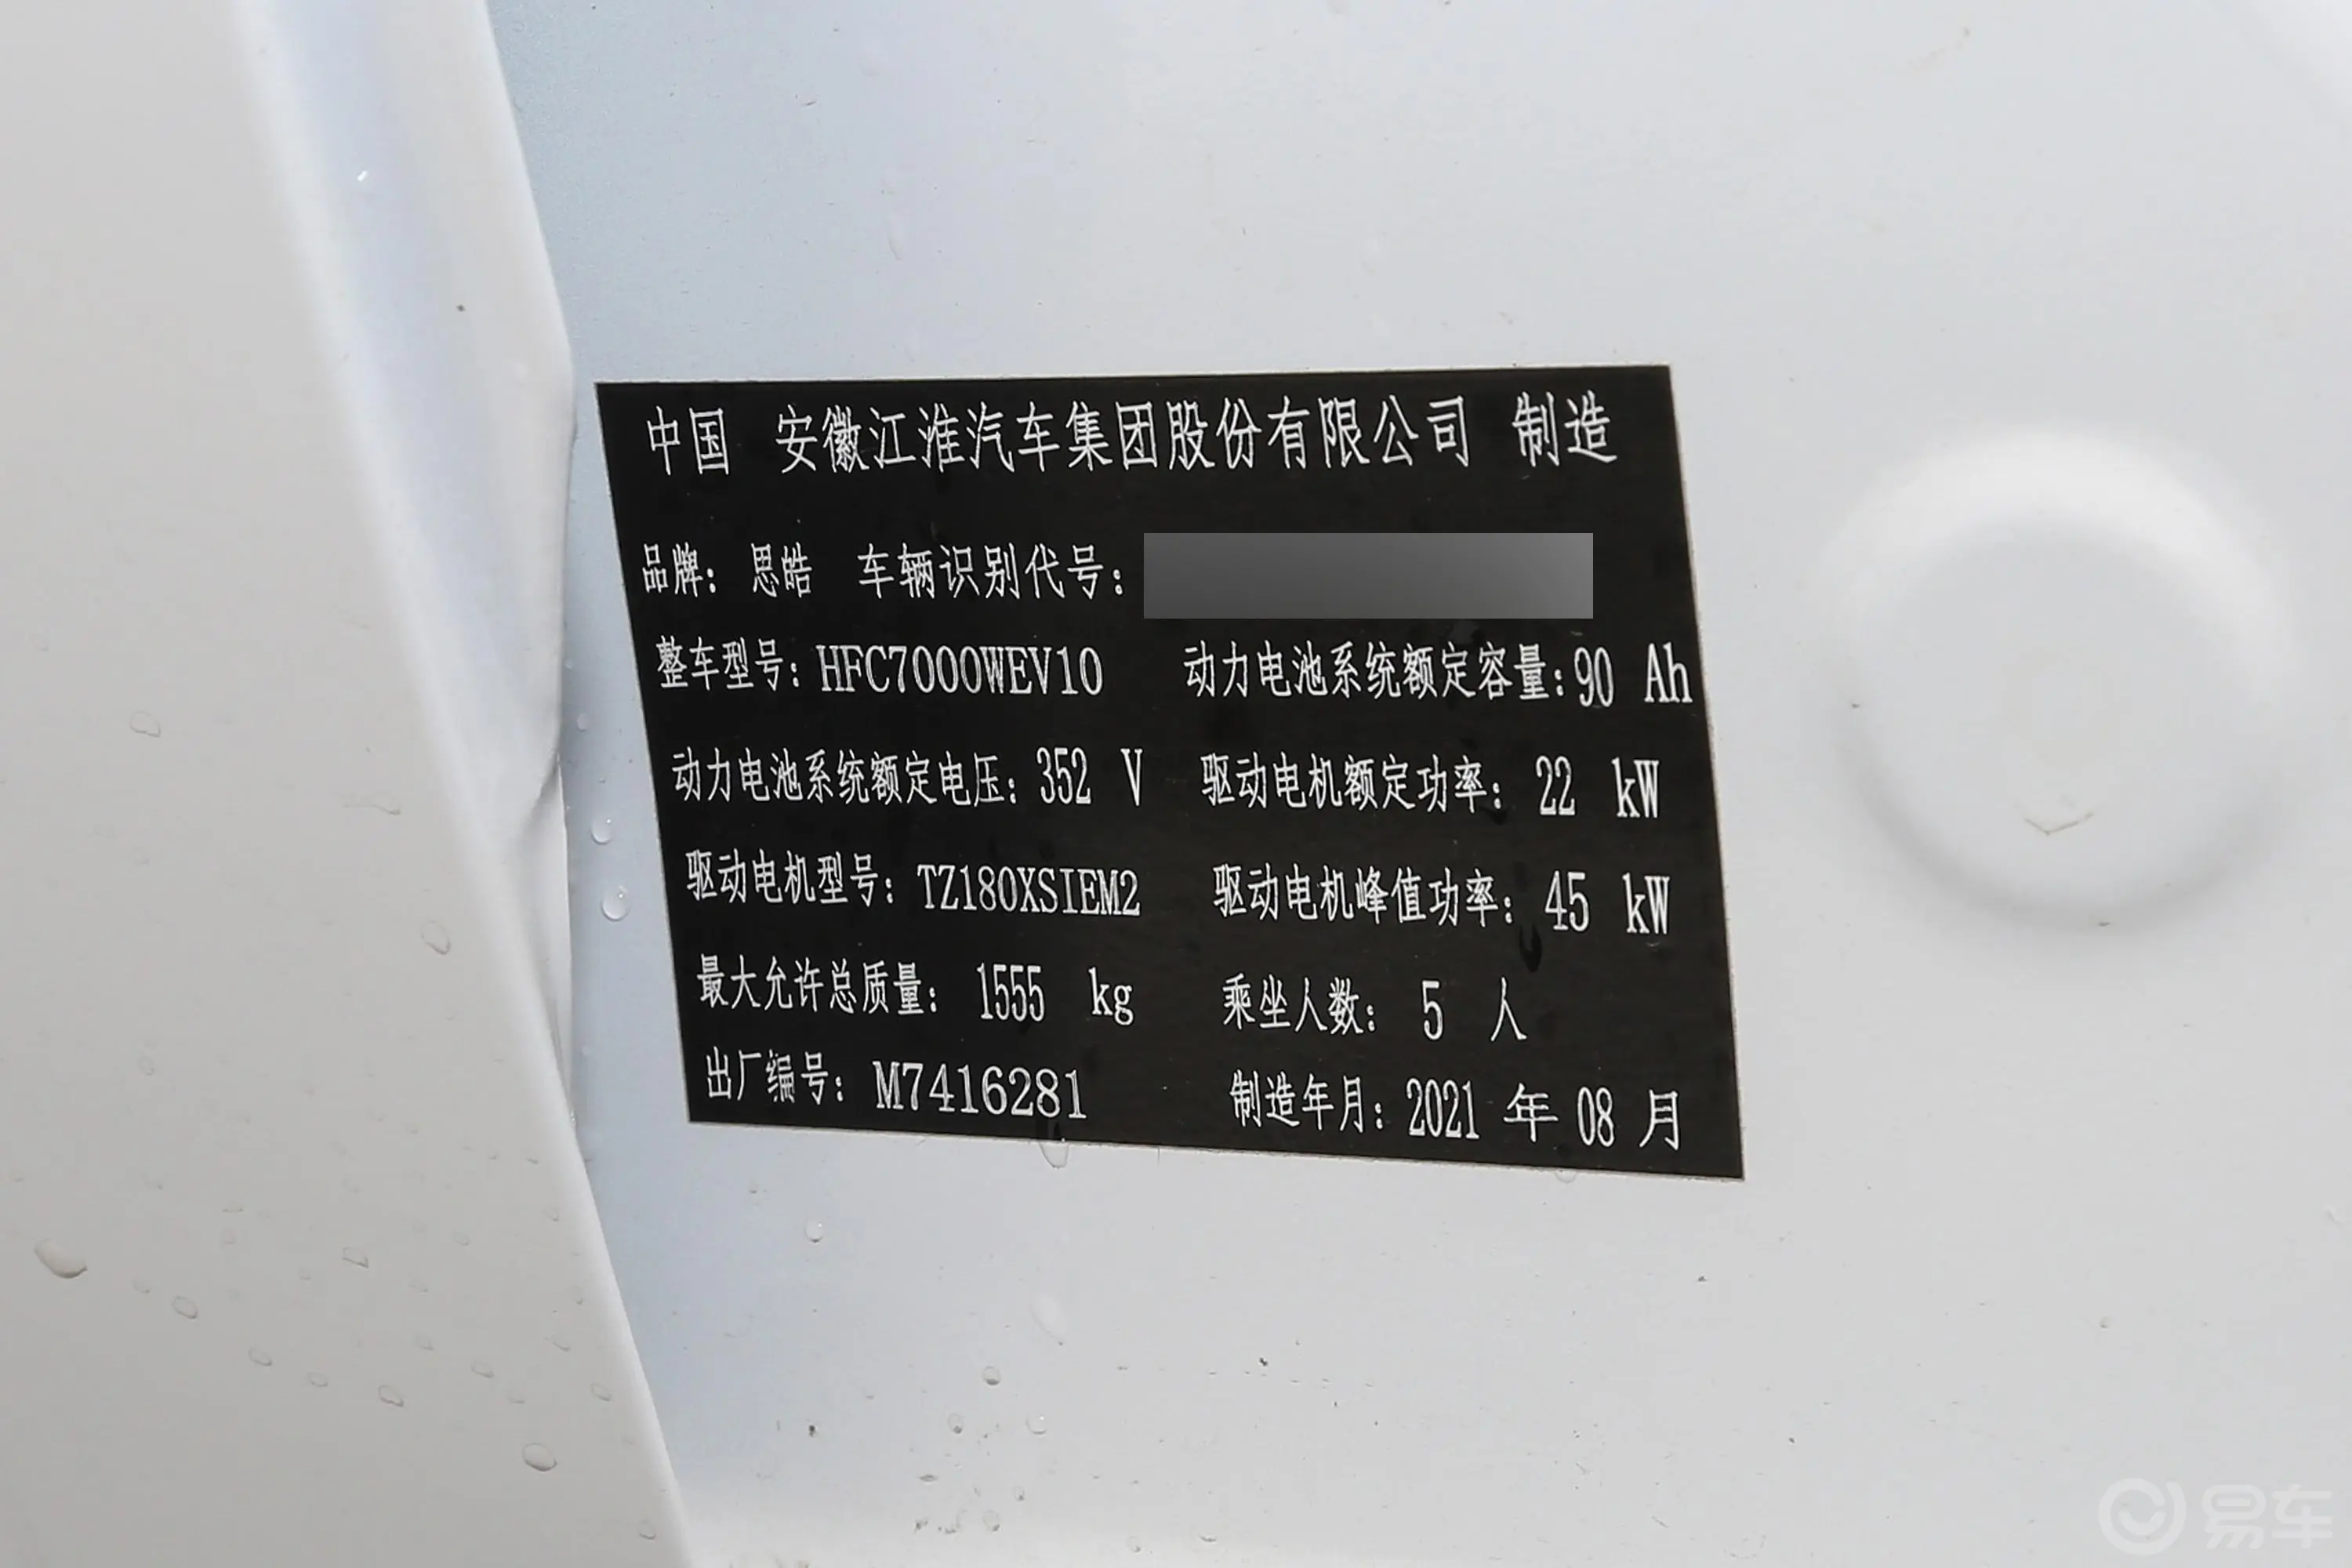 花仙子集美版 超越型车辆信息铭牌